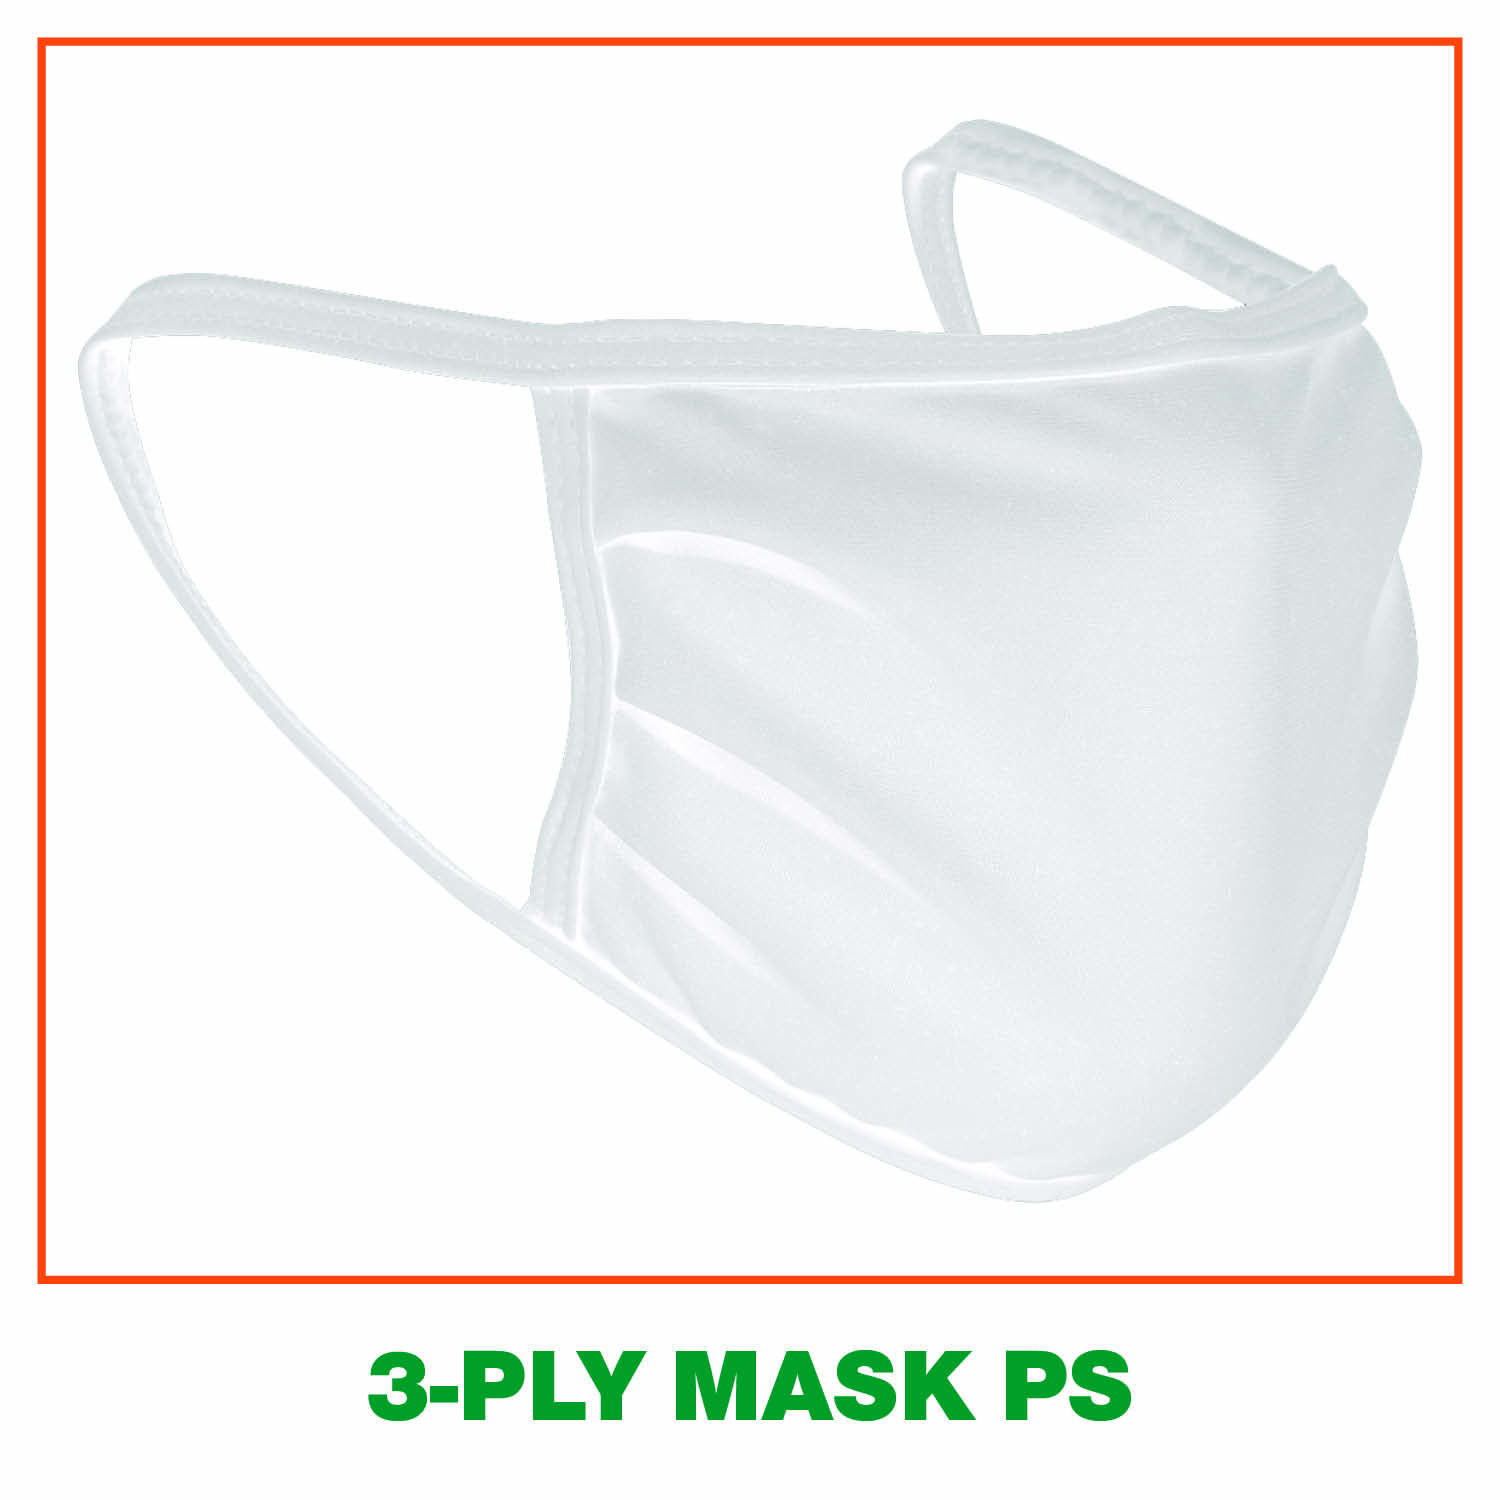 Masks PS 3-PLY